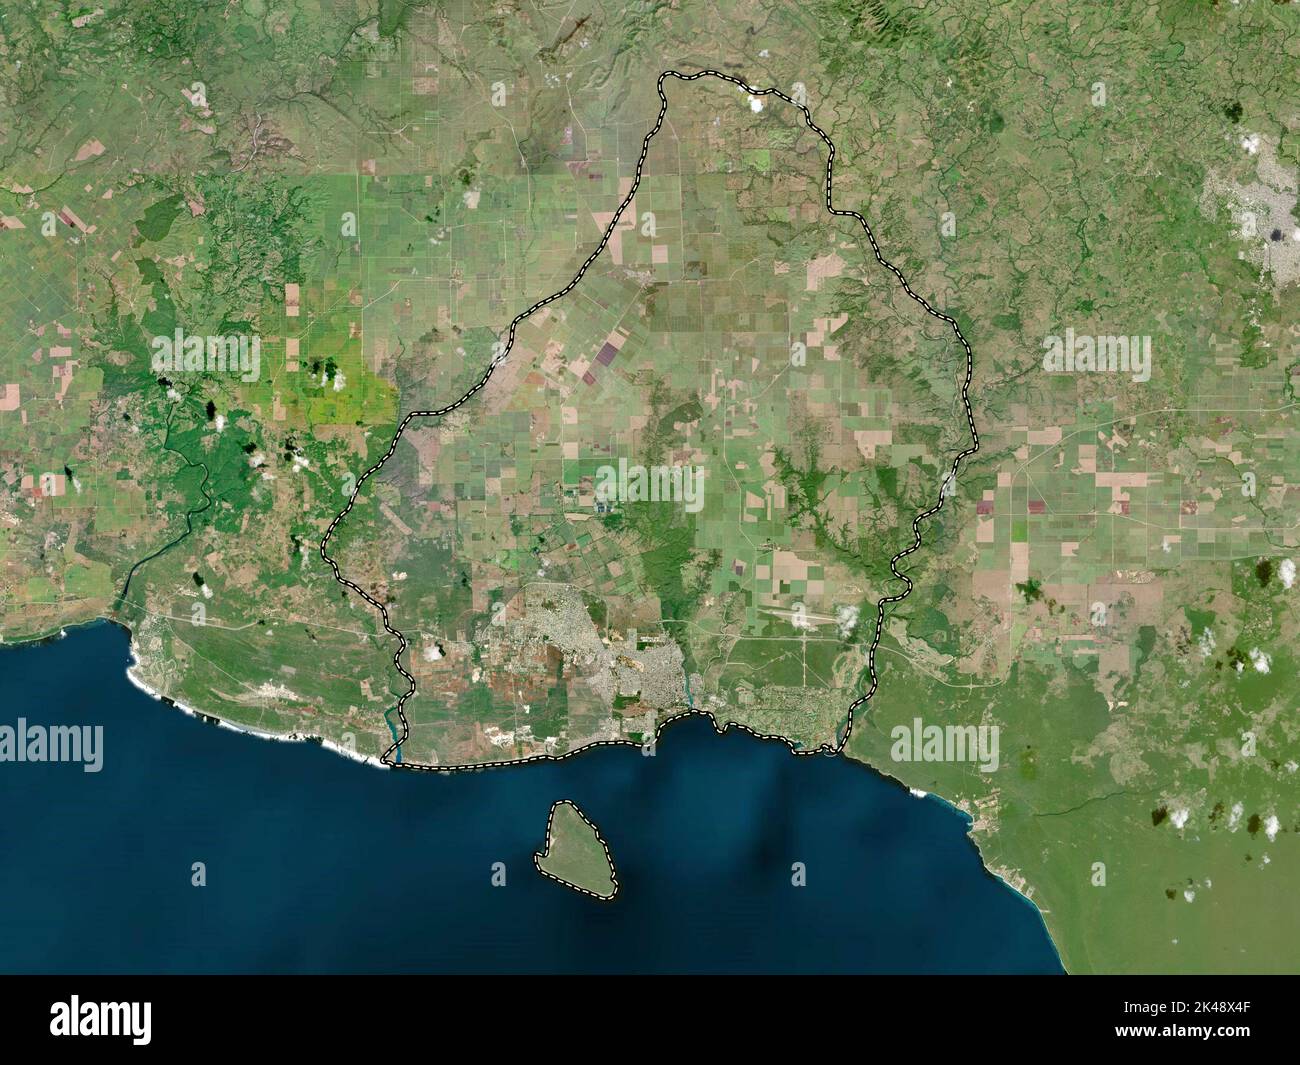 La Romana, provincia della Repubblica Dominicana. Mappa satellitare ad alta risoluzione Foto Stock